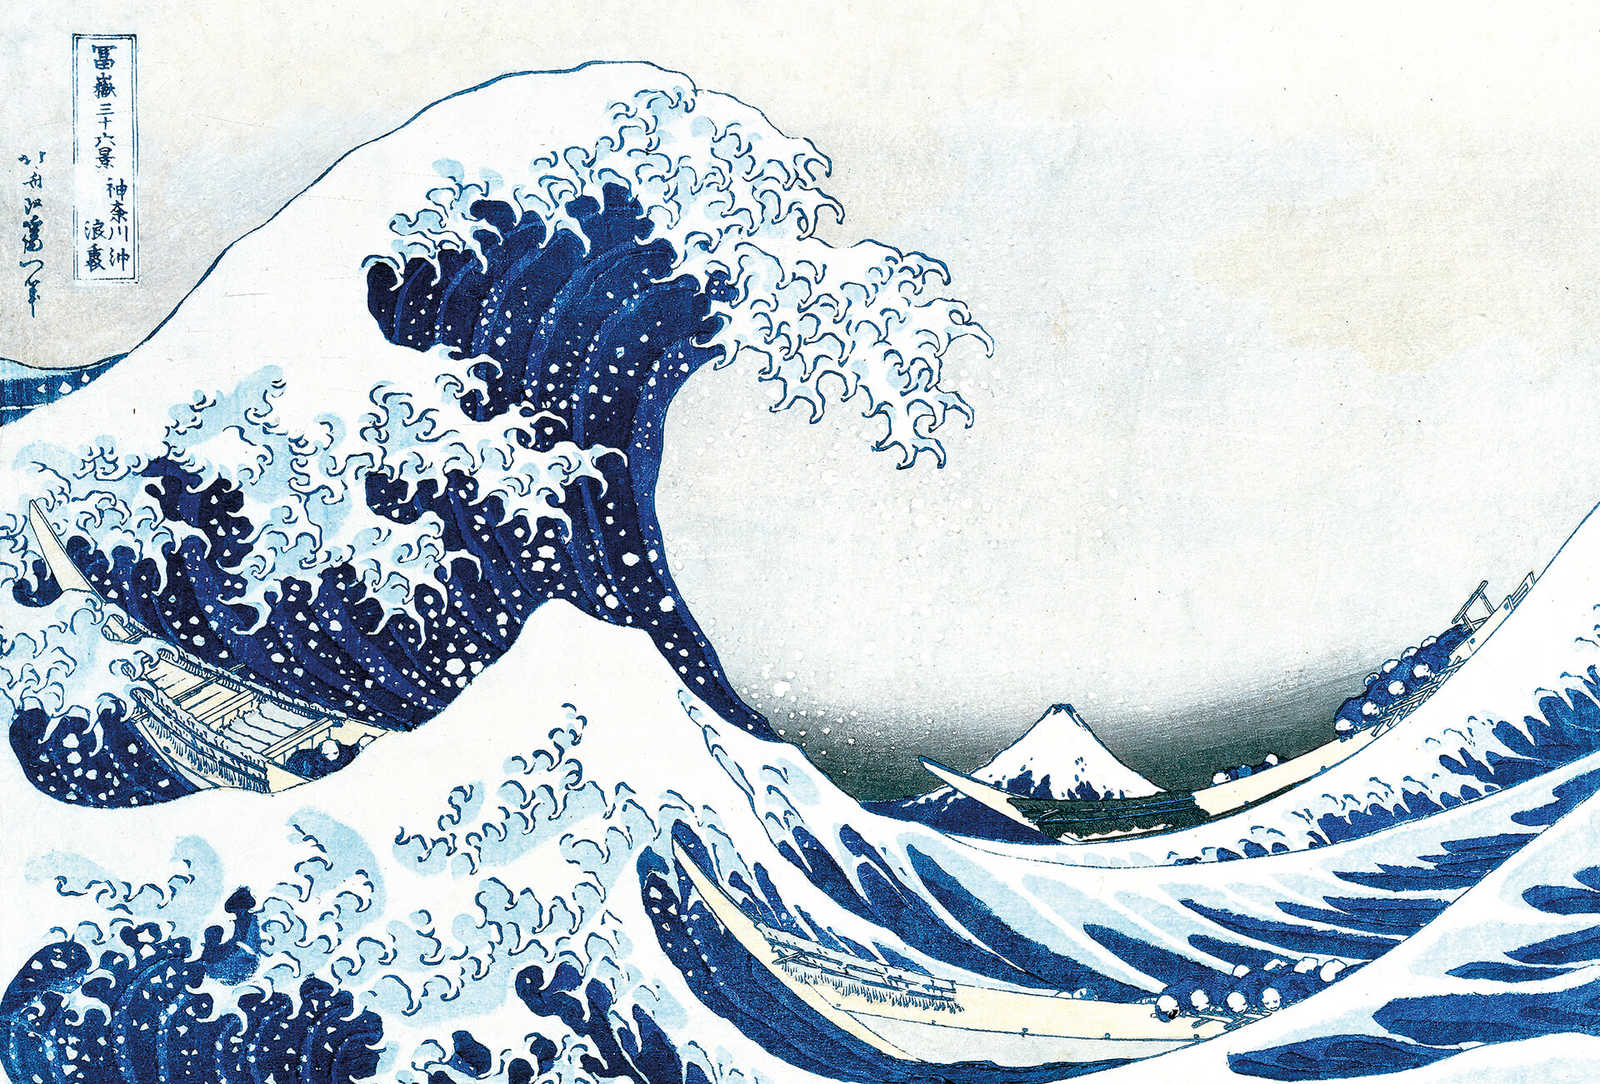         Fototapete gezeichnete Welle – Blau
    